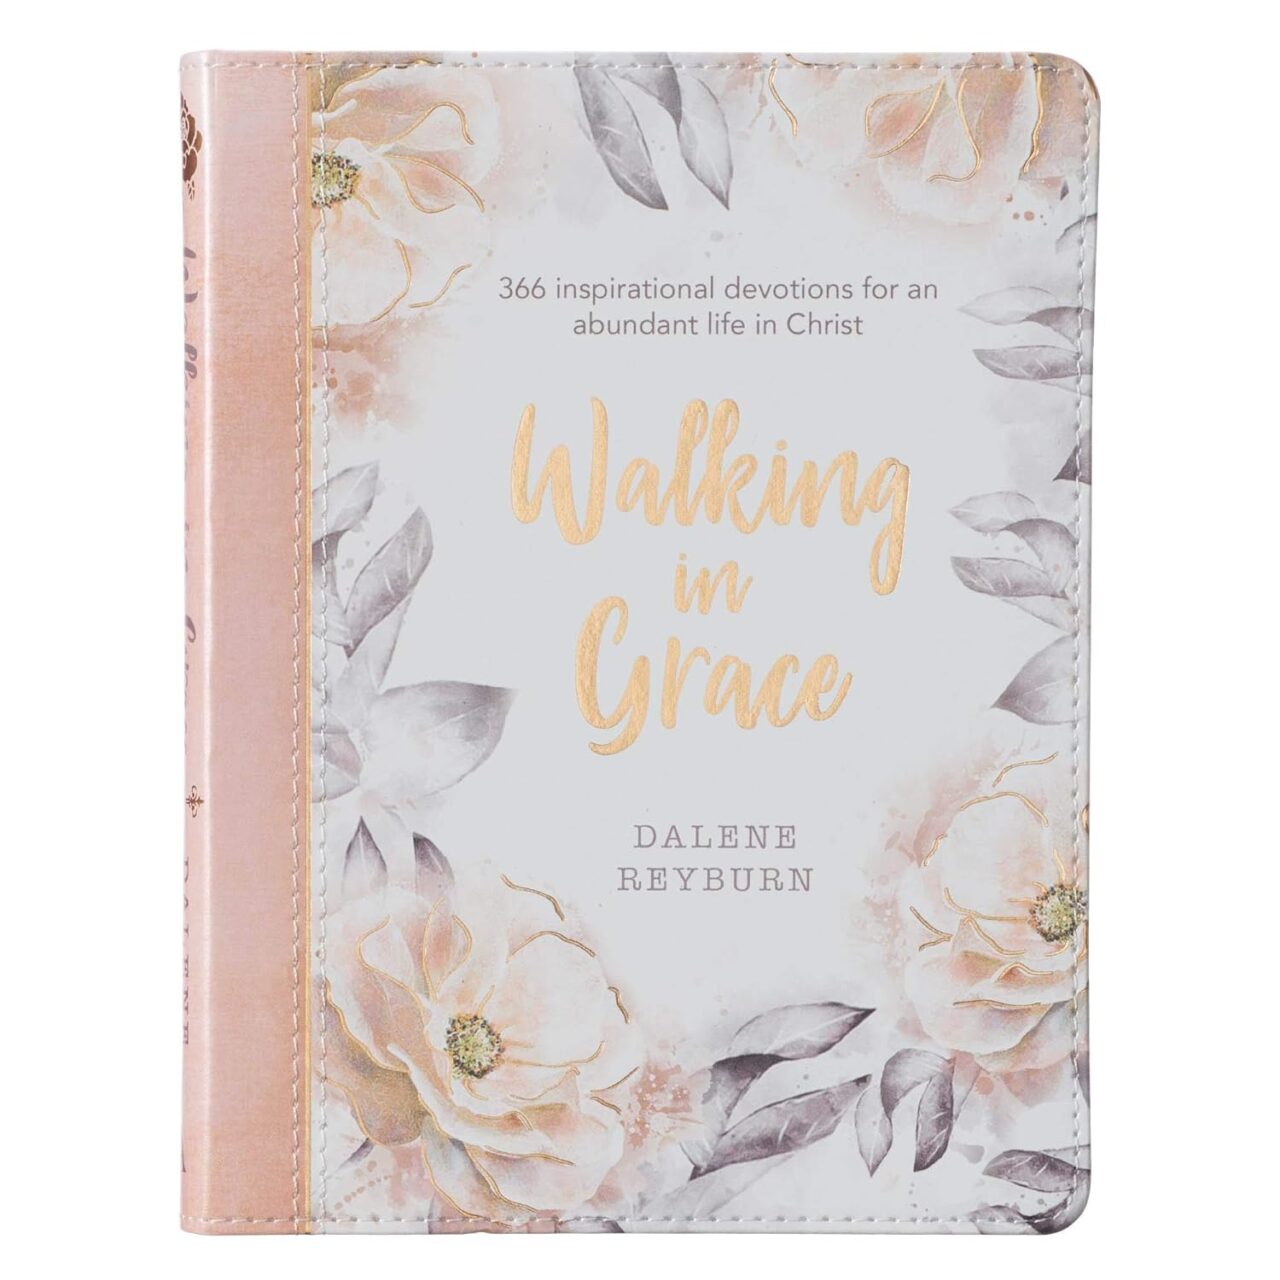 Walking in grace - Christian devotional book